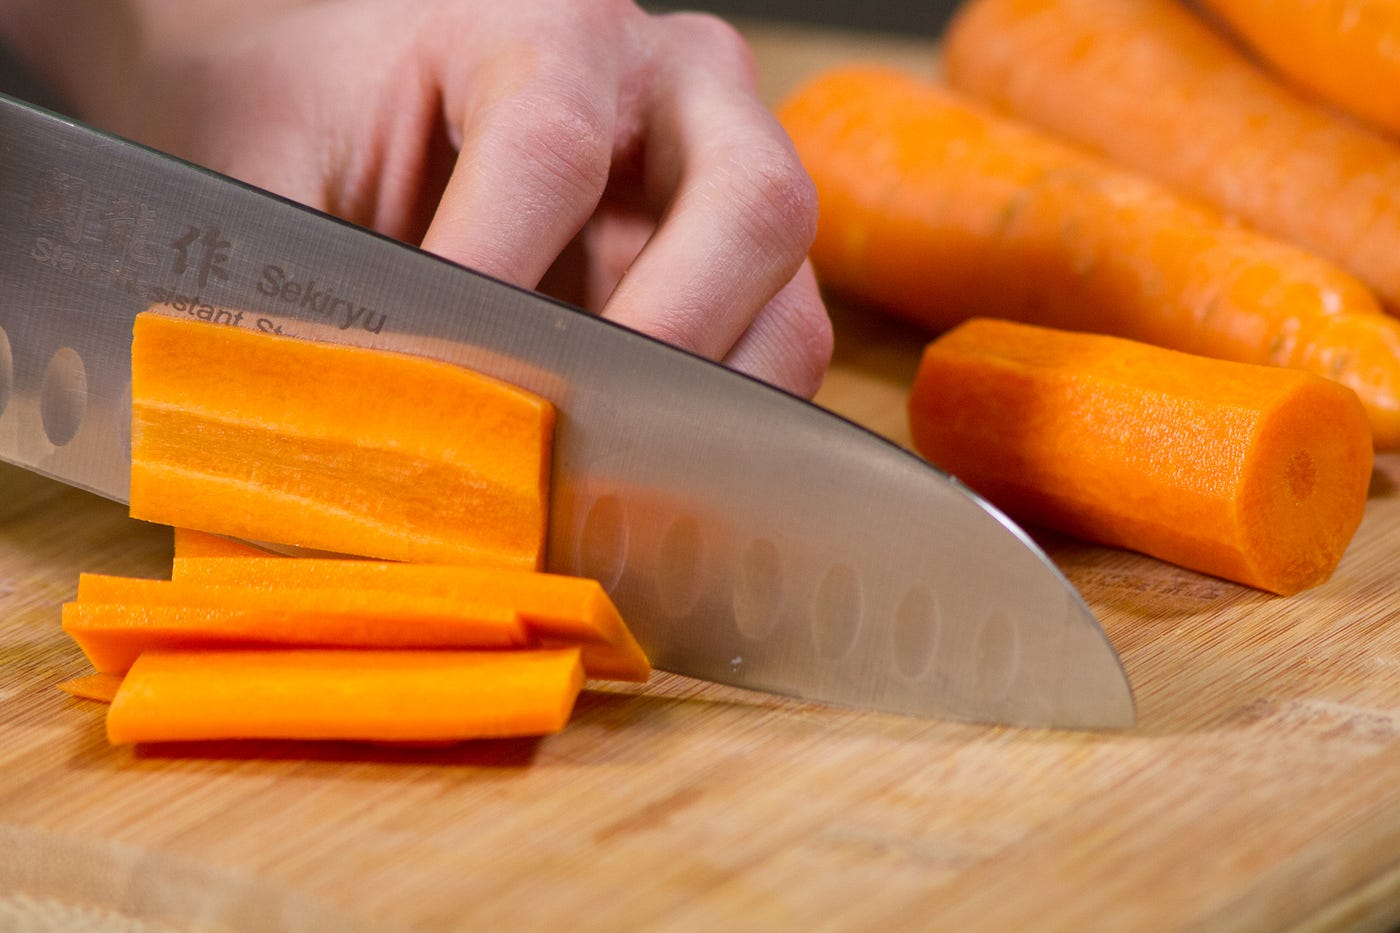 Técnicas básicas de cocina I. Cómo cortar las verduras | by Recetix |  Recetix | Medium